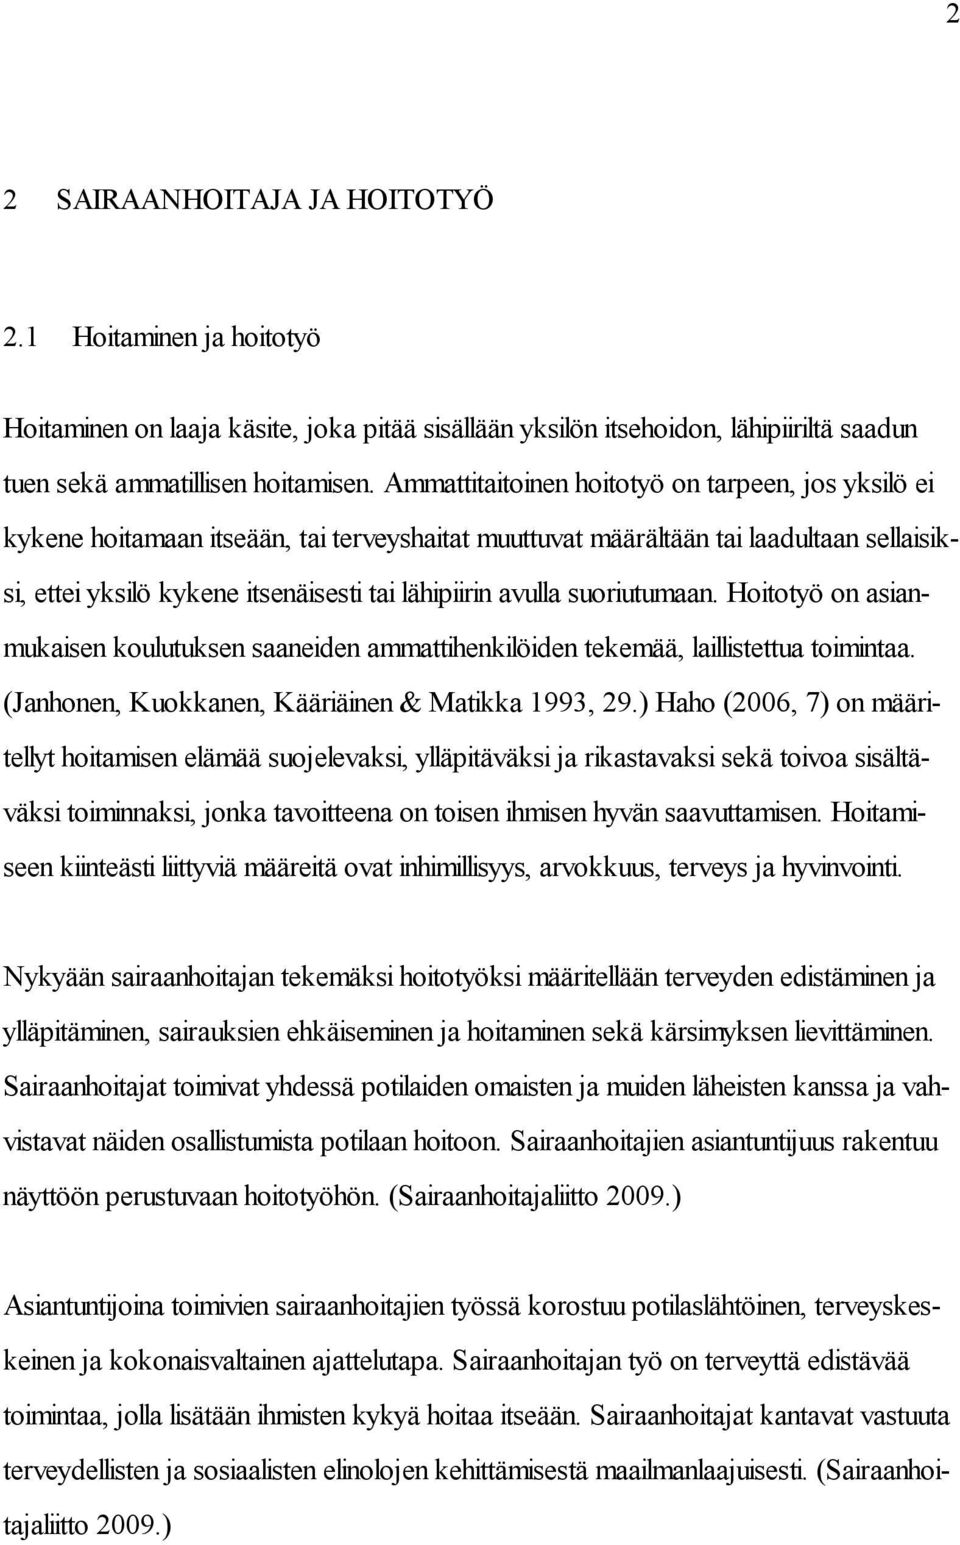 suoriutumaan. Hoitotyö on asianmukaisen koulutuksen saaneiden ammattihenkilöiden tekemää, laillistettua toimintaa. (Janhonen, Kuokkanen, Kääriäinen & Matikka 1993, 29.